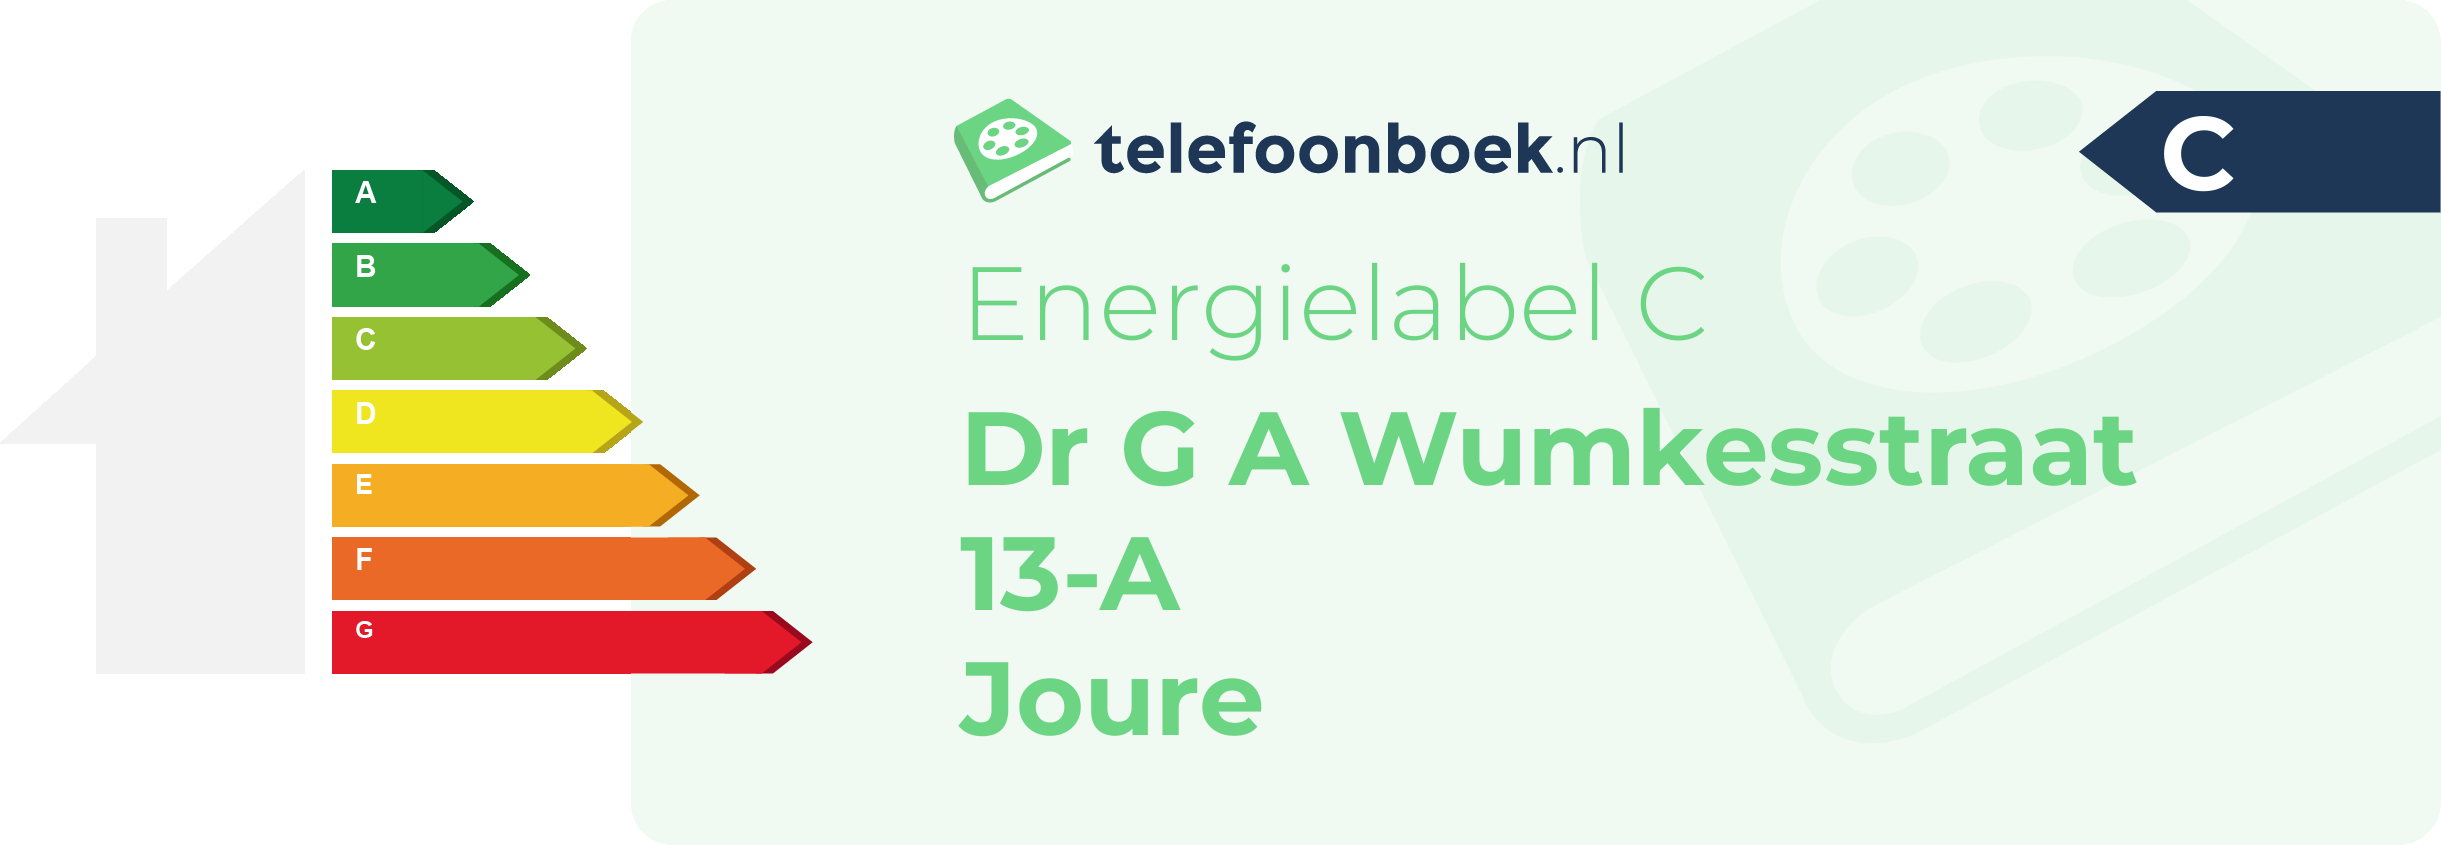 Energielabel Dr G A Wumkesstraat 13-A Joure